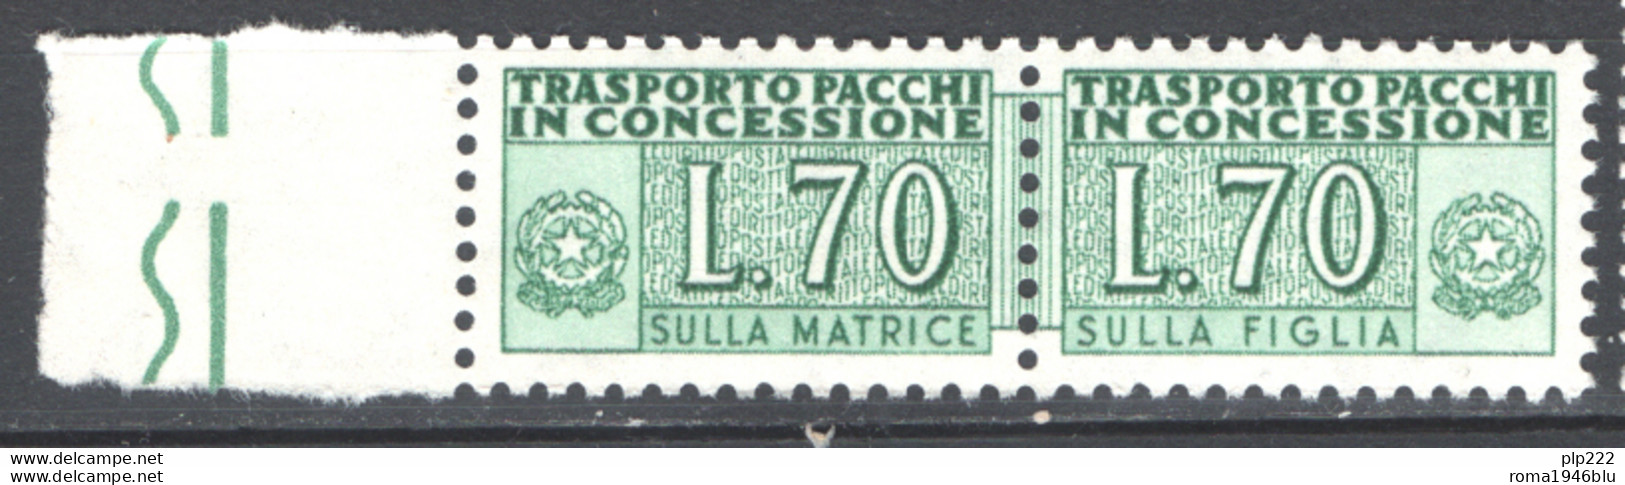 Italia Repubblica 1966 Pacchi In Concessione 70 Â£ Sass. PPC 8 **/MNH VF - Paquetes En Consigna